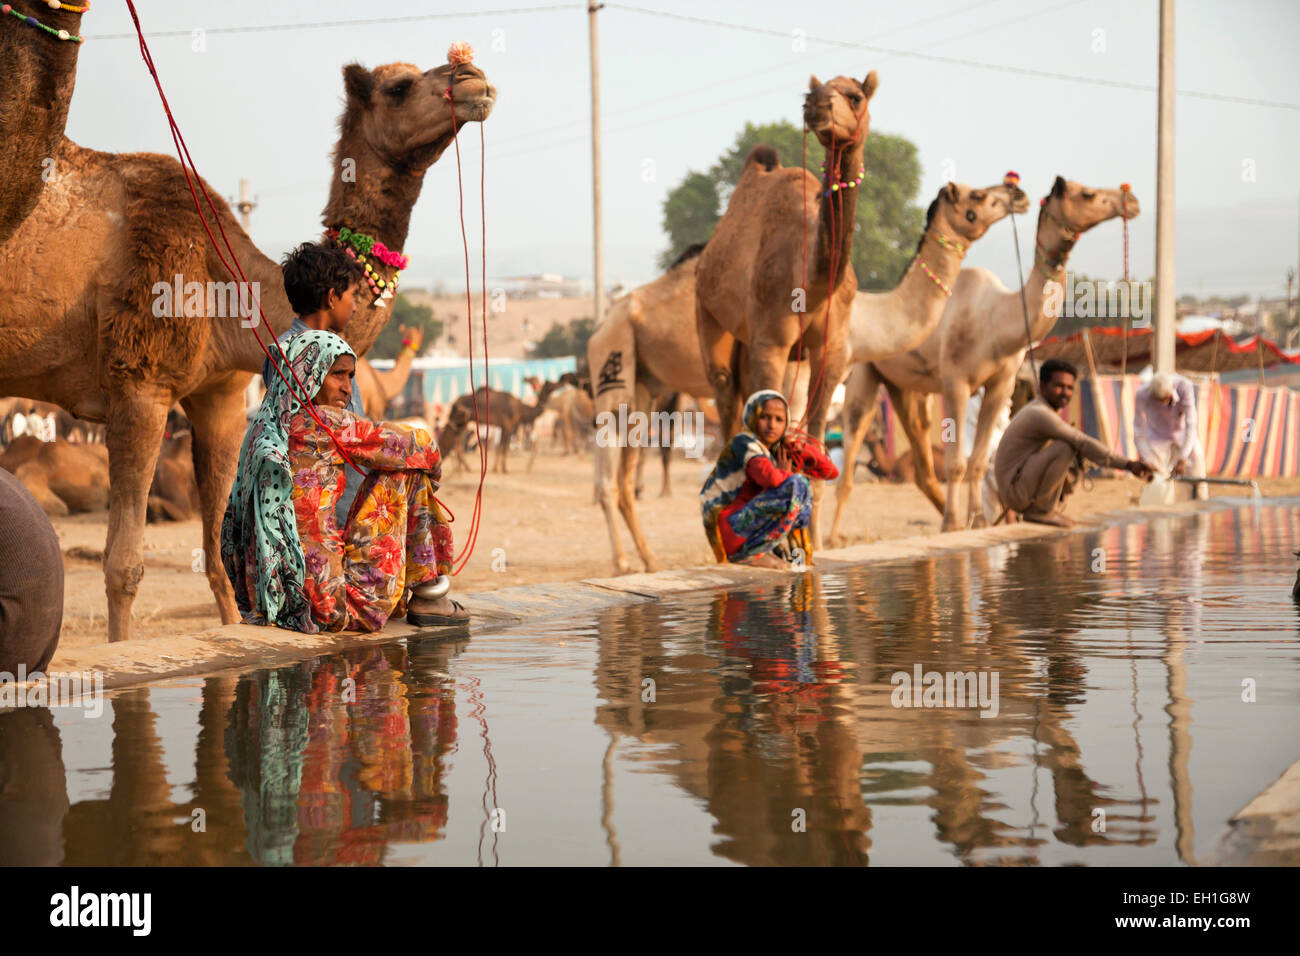 Camels at a watering point at the camel and livestock fair Pushkar Fair or Pushkar Mela, Pushkar, Rajasthan, India, Asia Stock Photo